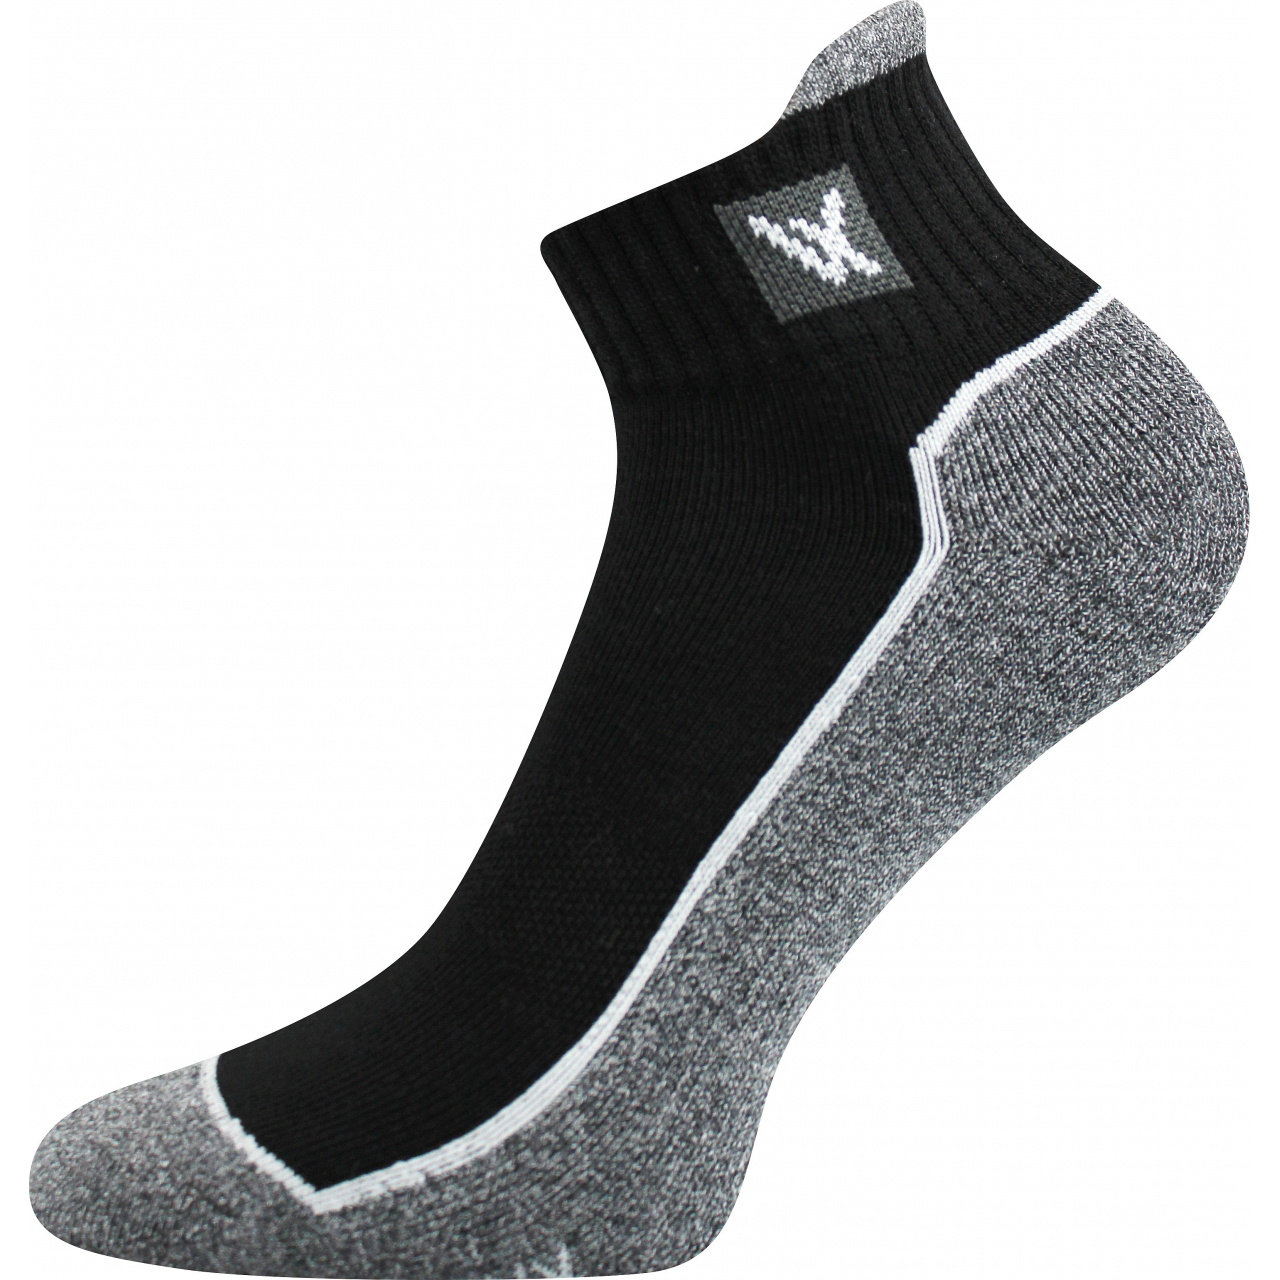 Ponožky unisex sportovní Voxx Nesty 01 - černé-šedé, 43-46